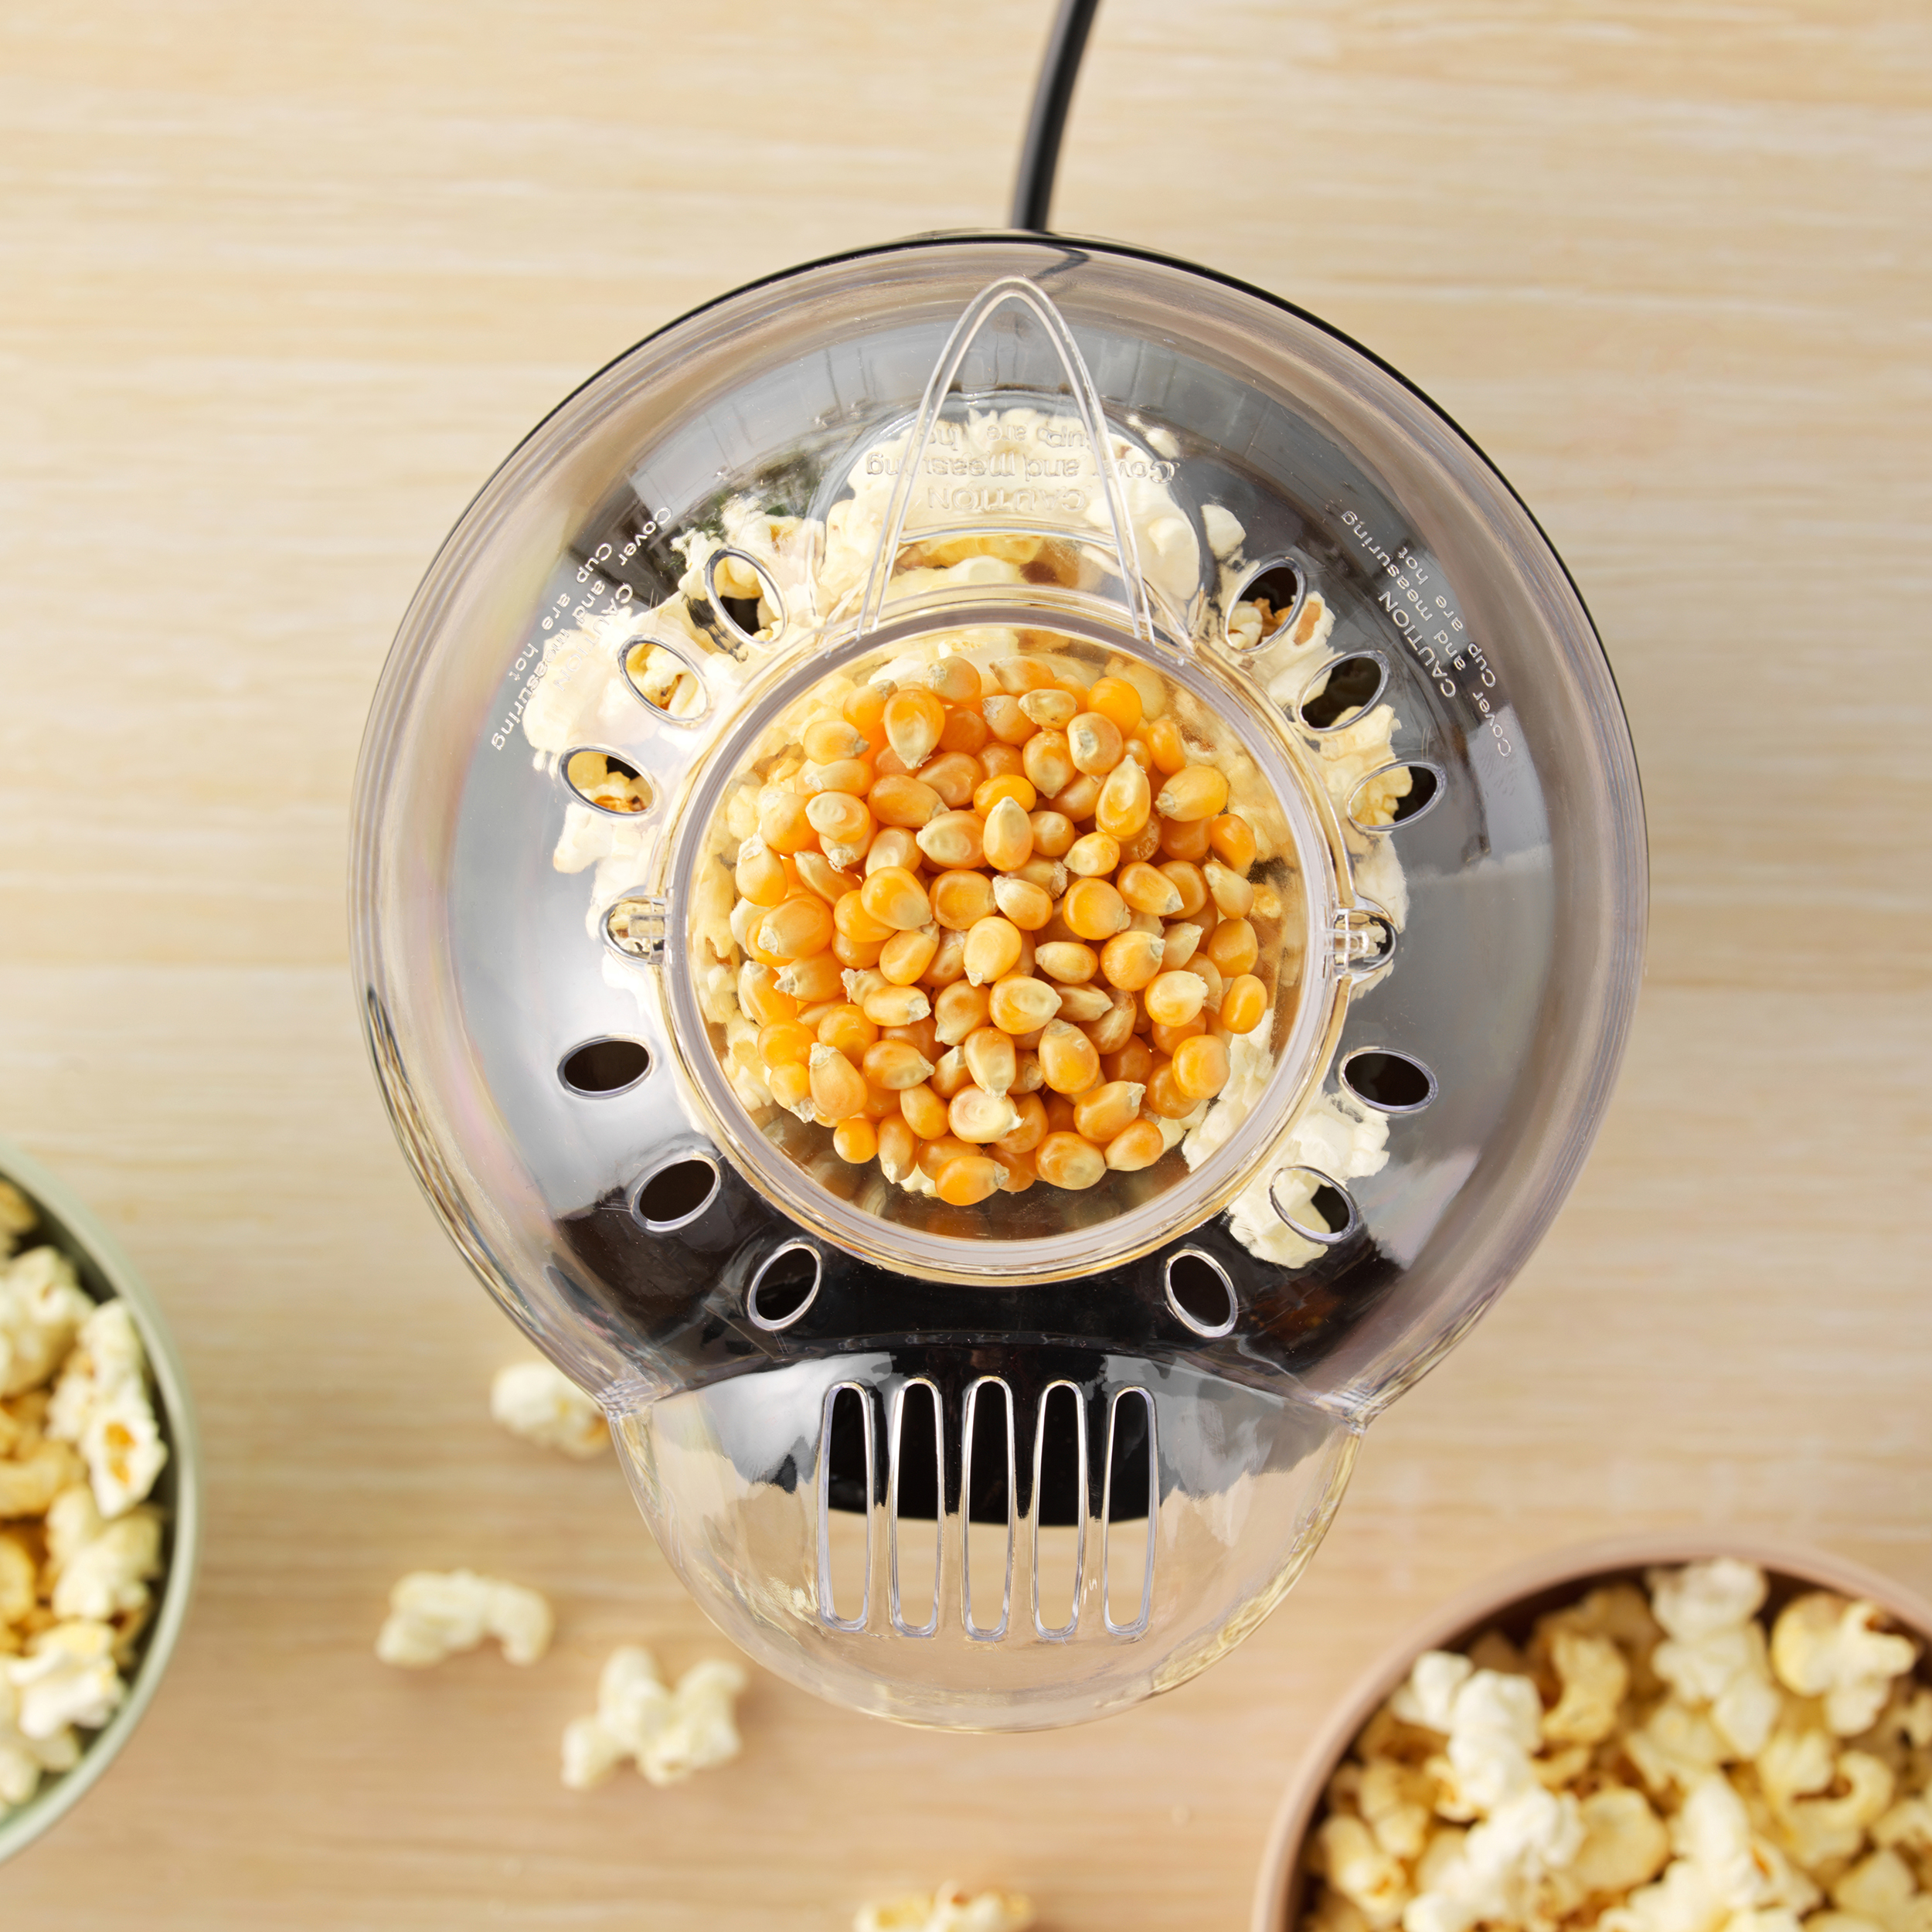 - grün oder Popcorn PETRA Messbecher Popcorn maker Öl - Popcornmaschine Heißluft - - Retro Popcornmaschine Butter ohne 1200W